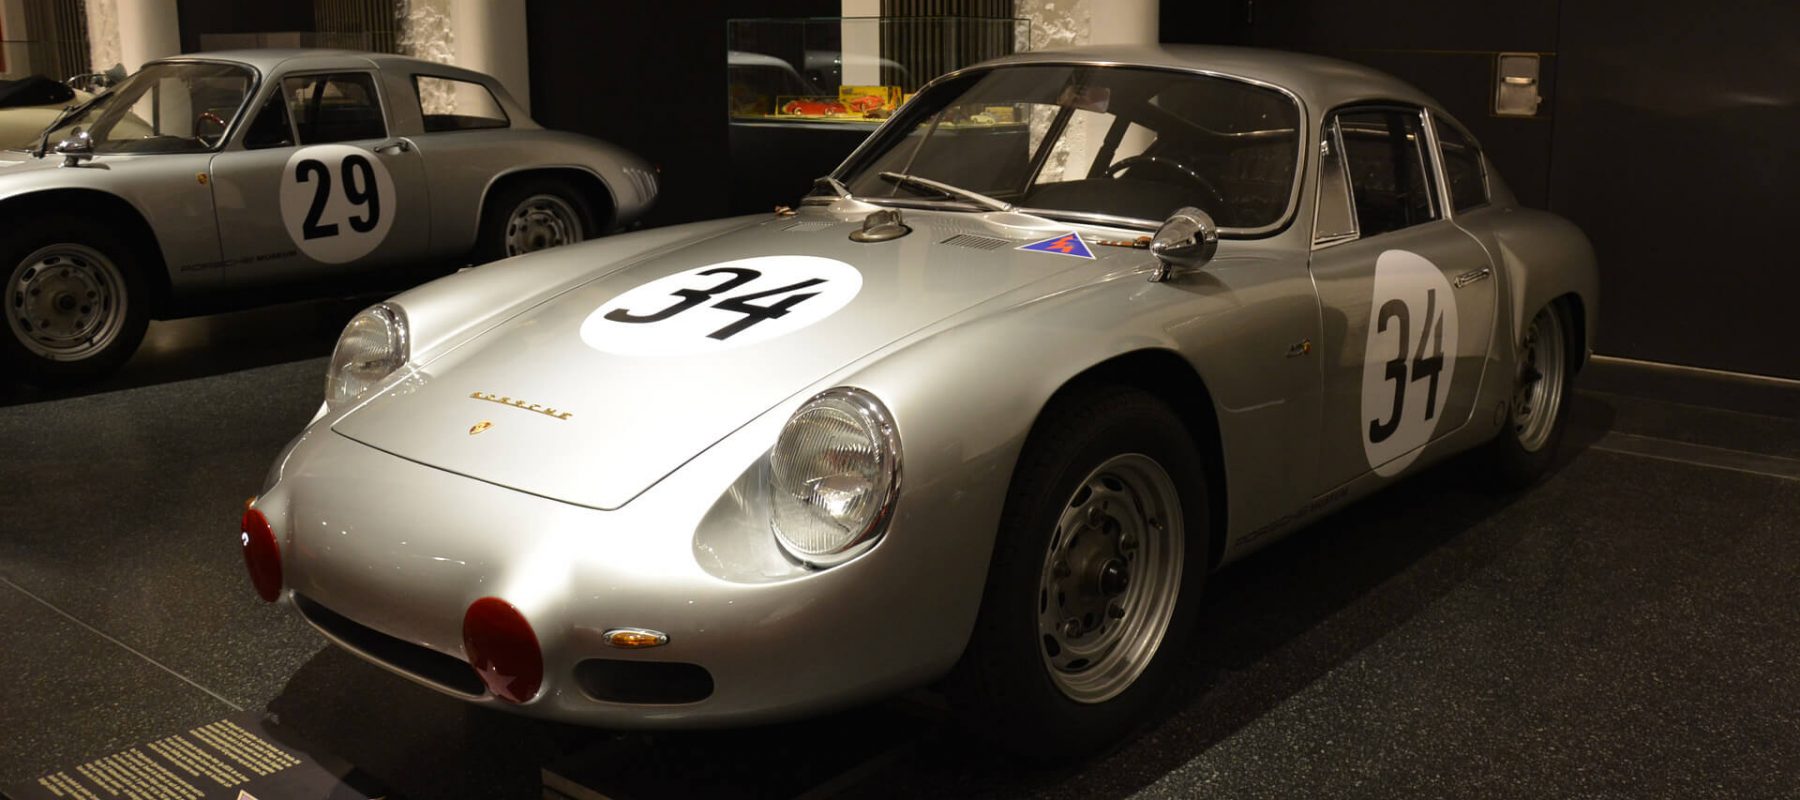 In der Sonderausstellung „356 VIP – Very Important Porsches“ präsentierte das Hamburger Automuseum PROTOTYP 2015/2016 eine Auswahl ganz besonderer Porsche 356, die erstmalig in dieser Zusammenstellung zusammenfanden: vom ältesten noch erhaltenen Serien-Porsche aus der Anfangszeit im österreichischen Gmünd bis hin zu den Rennsport-Exoten der frühen 1960er Jahre.